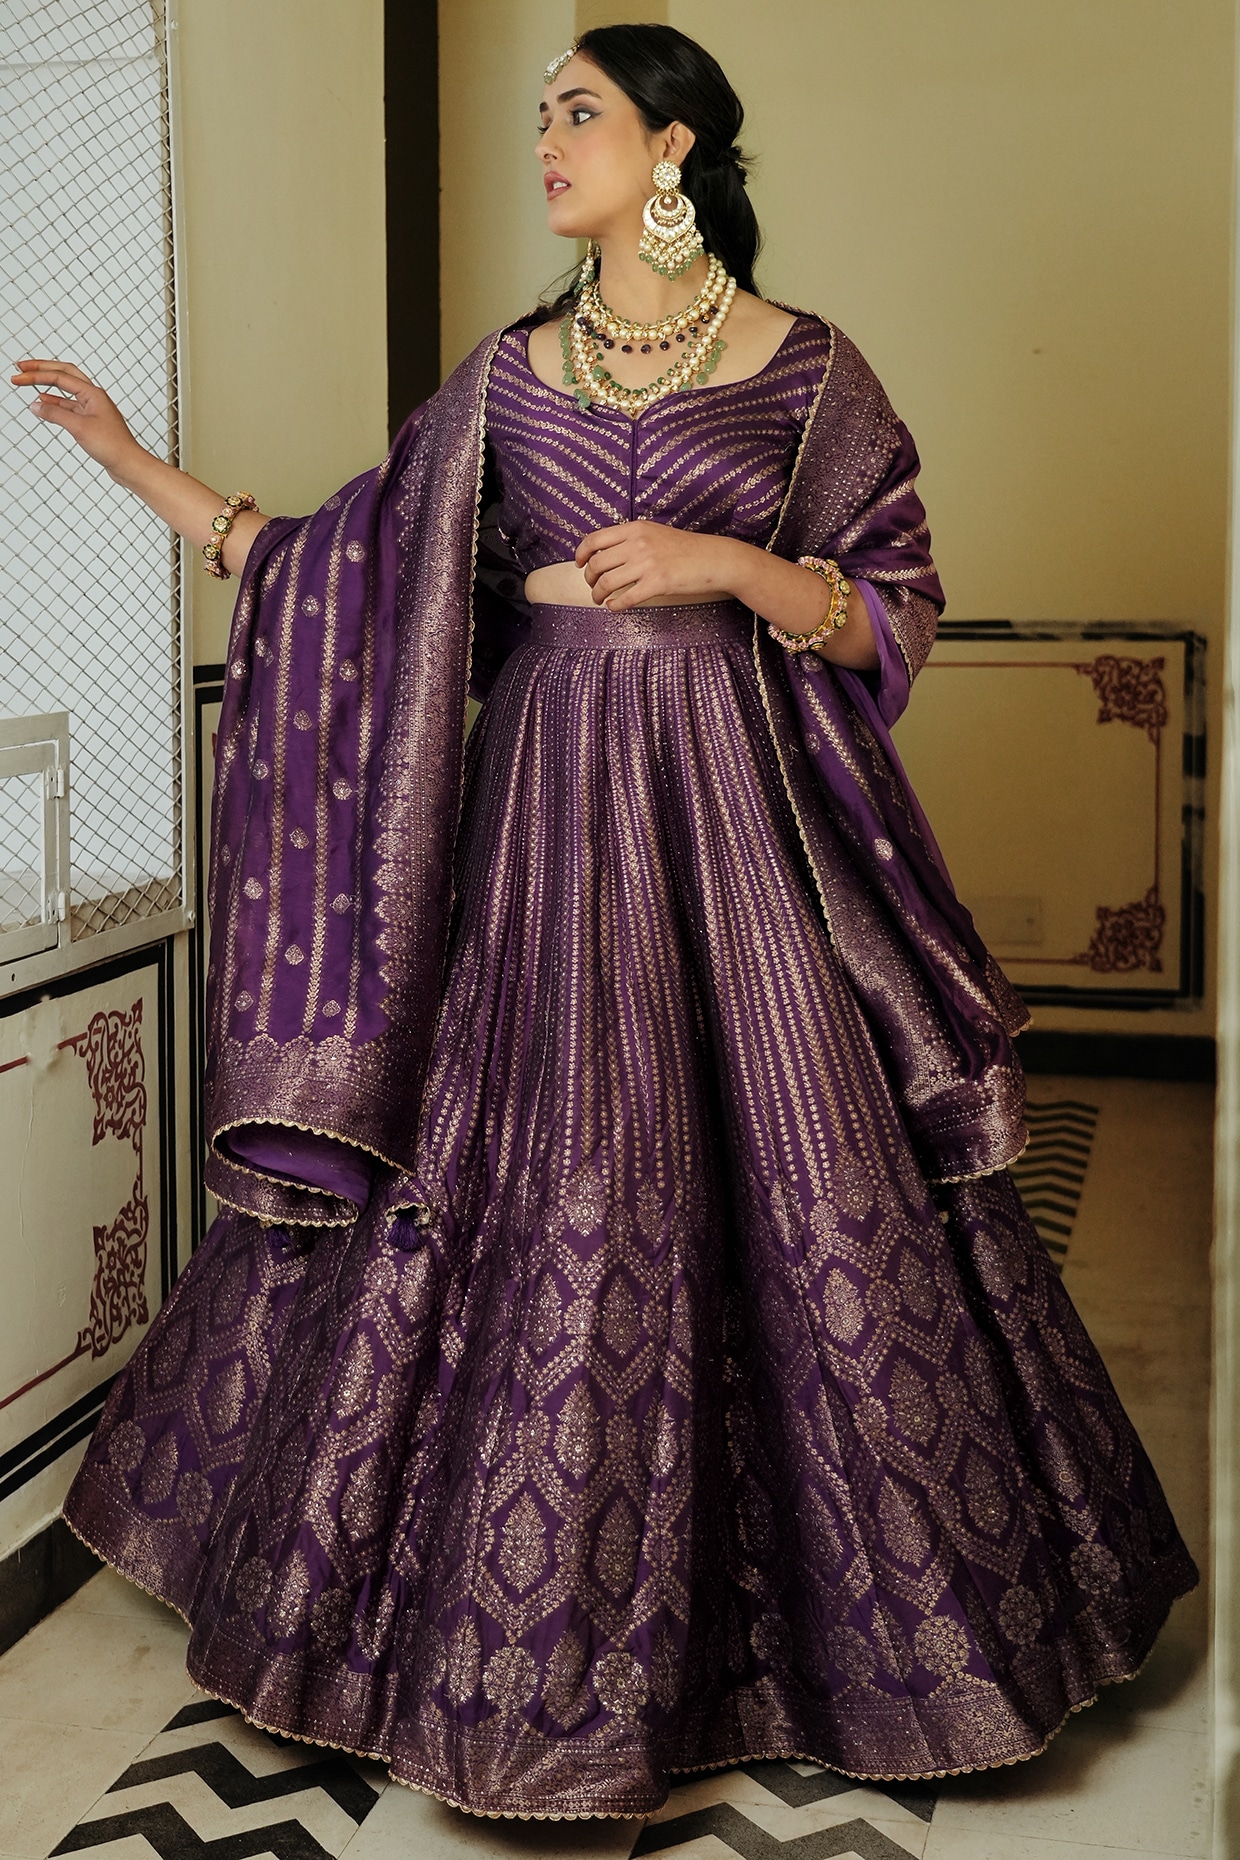 Purple Lehenga Choli Indian Ethnic Wedding Wear Lengha Chunri Schristmas  Gift | eBay